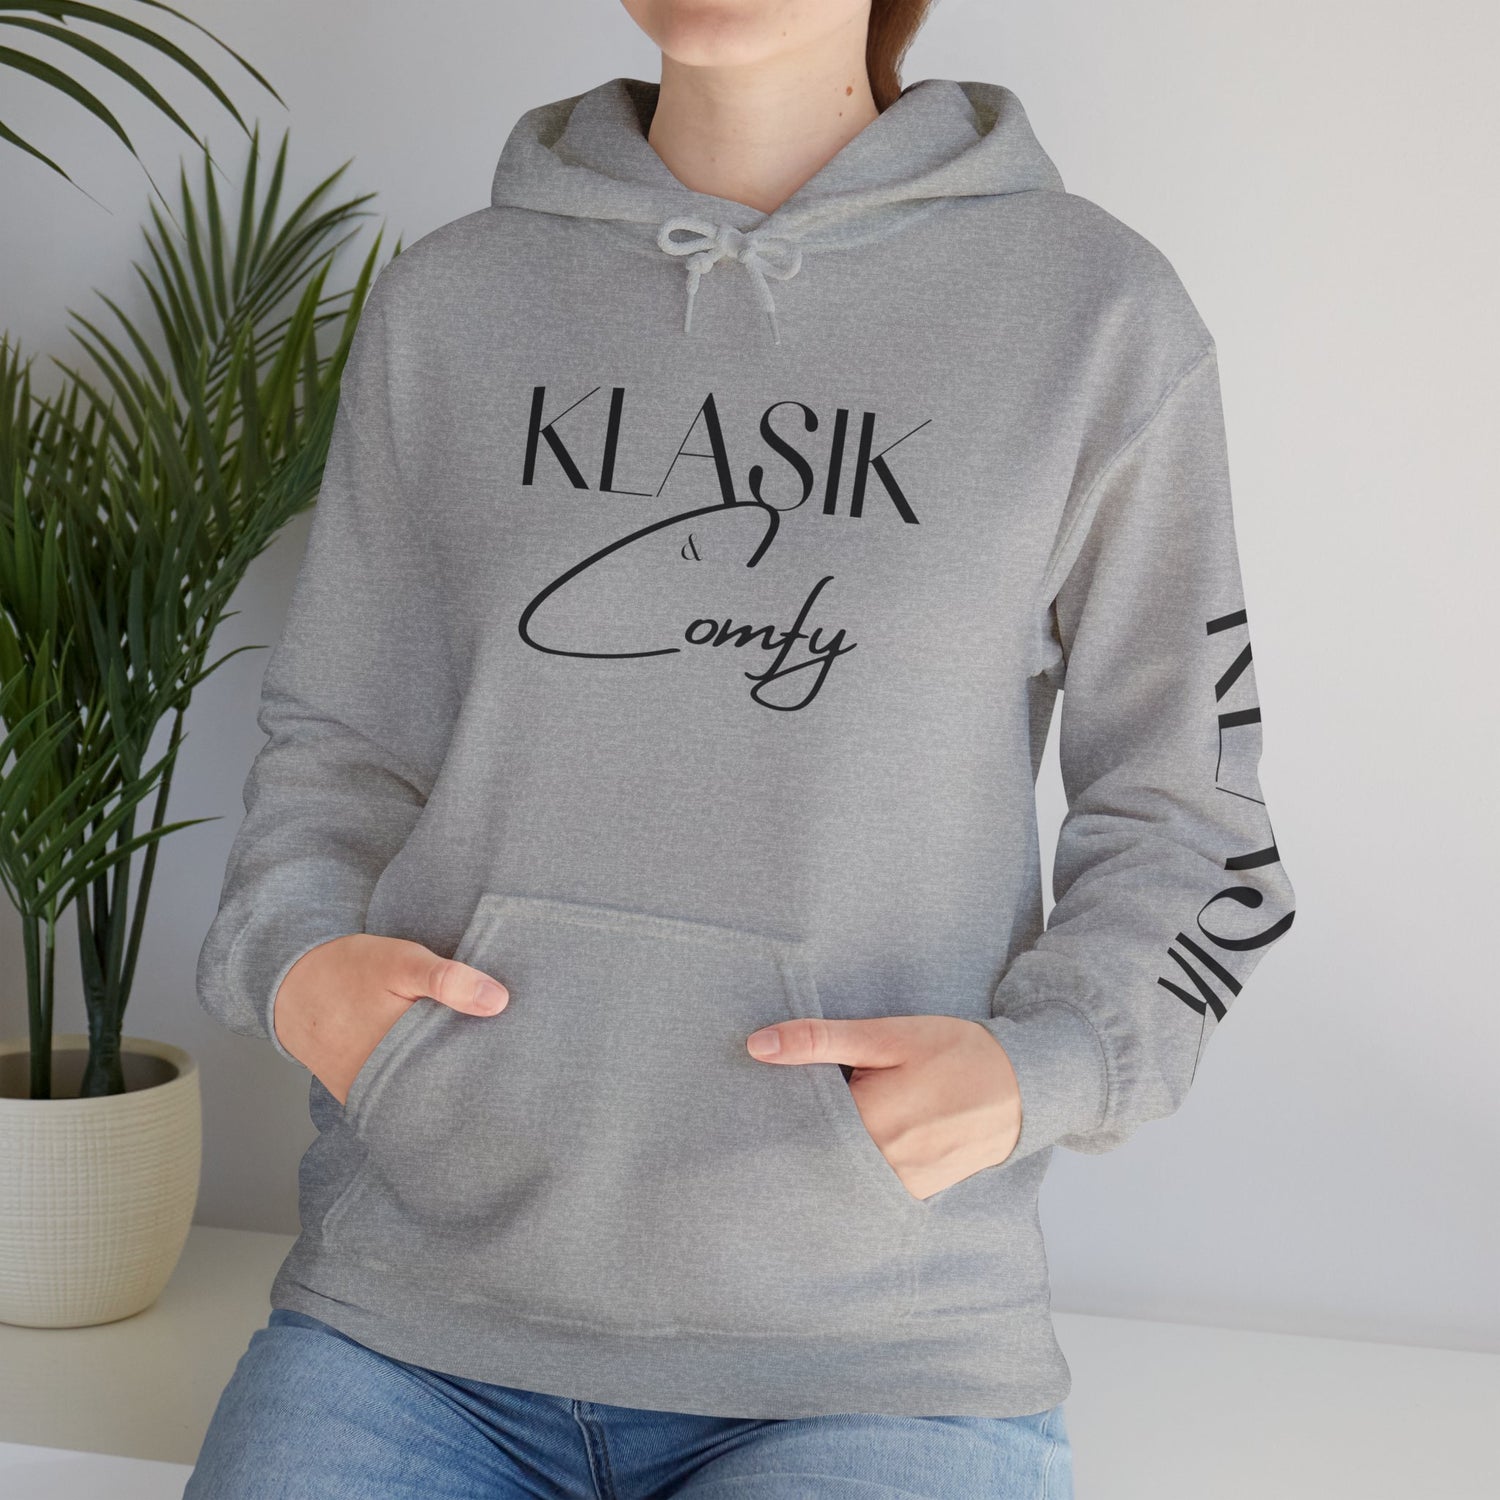 Klasik & Comfy - Hooded Sweatshirt